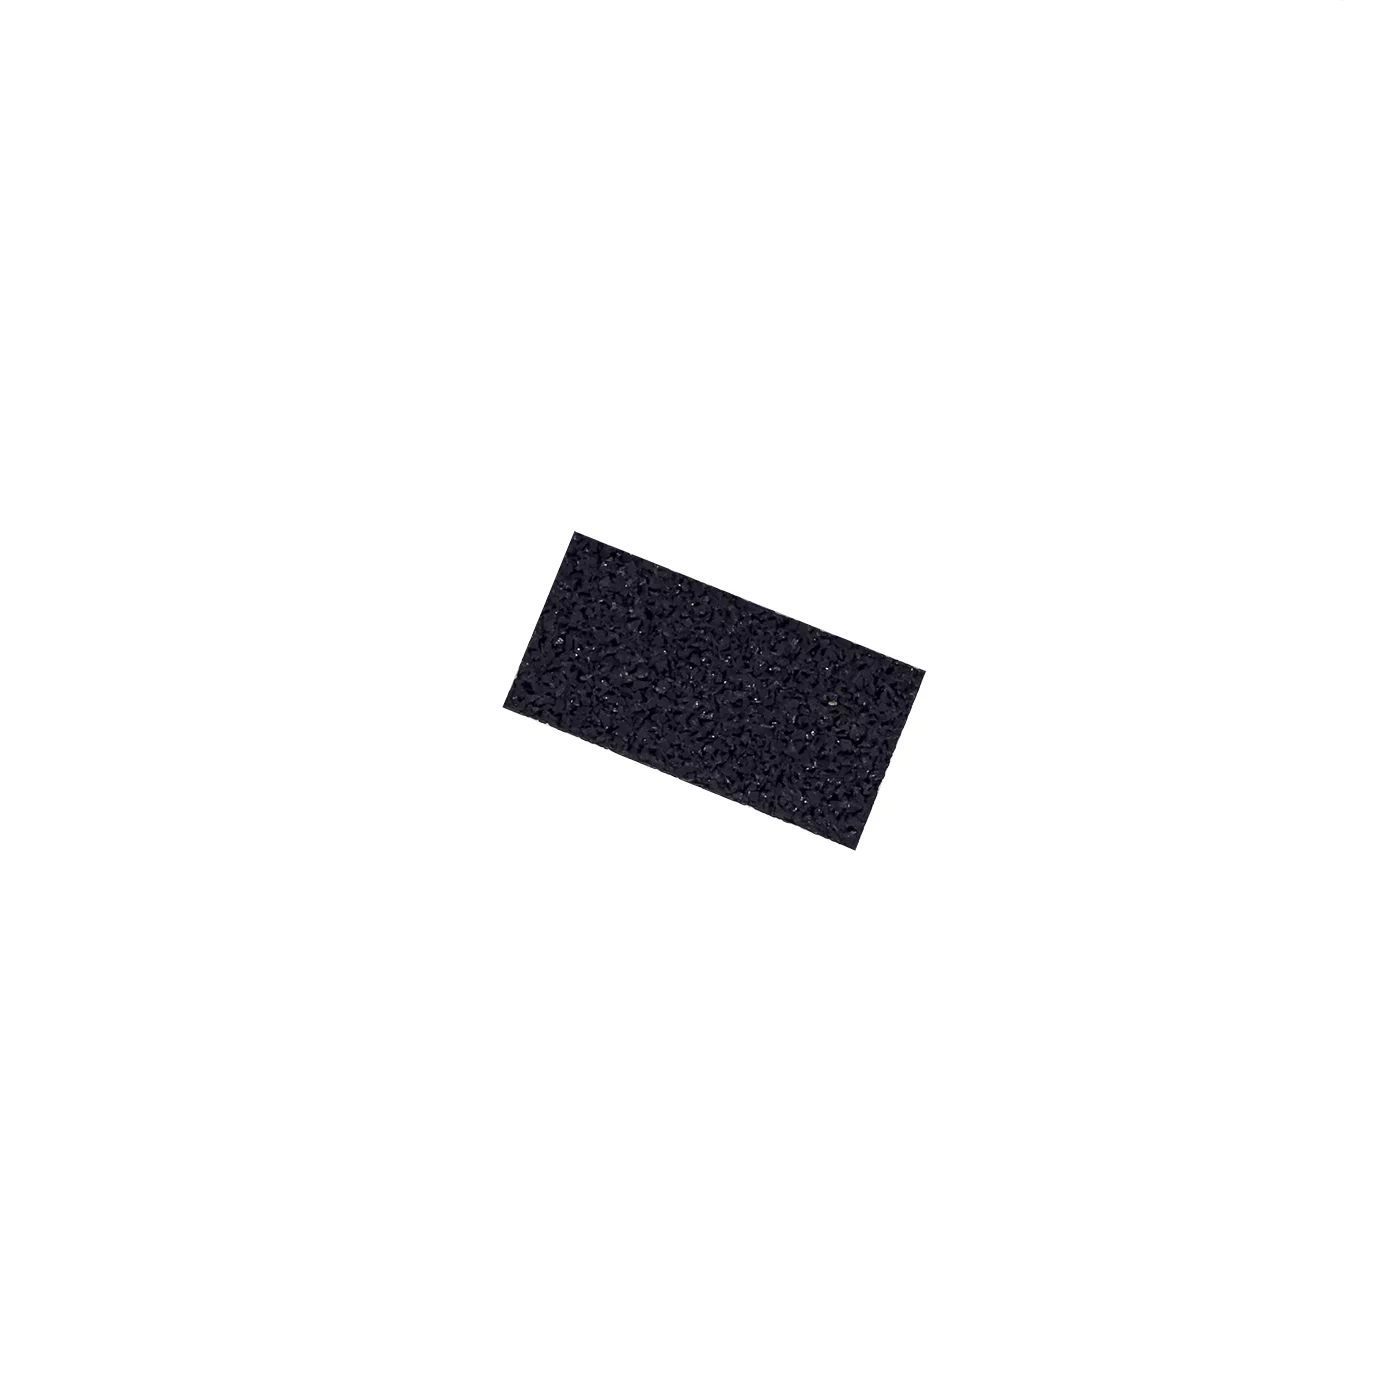 Gumová univerzálna podložka FLOMA UniPad - dĺžka 10 cm, šírka 5 cm, výška 1,5 cm